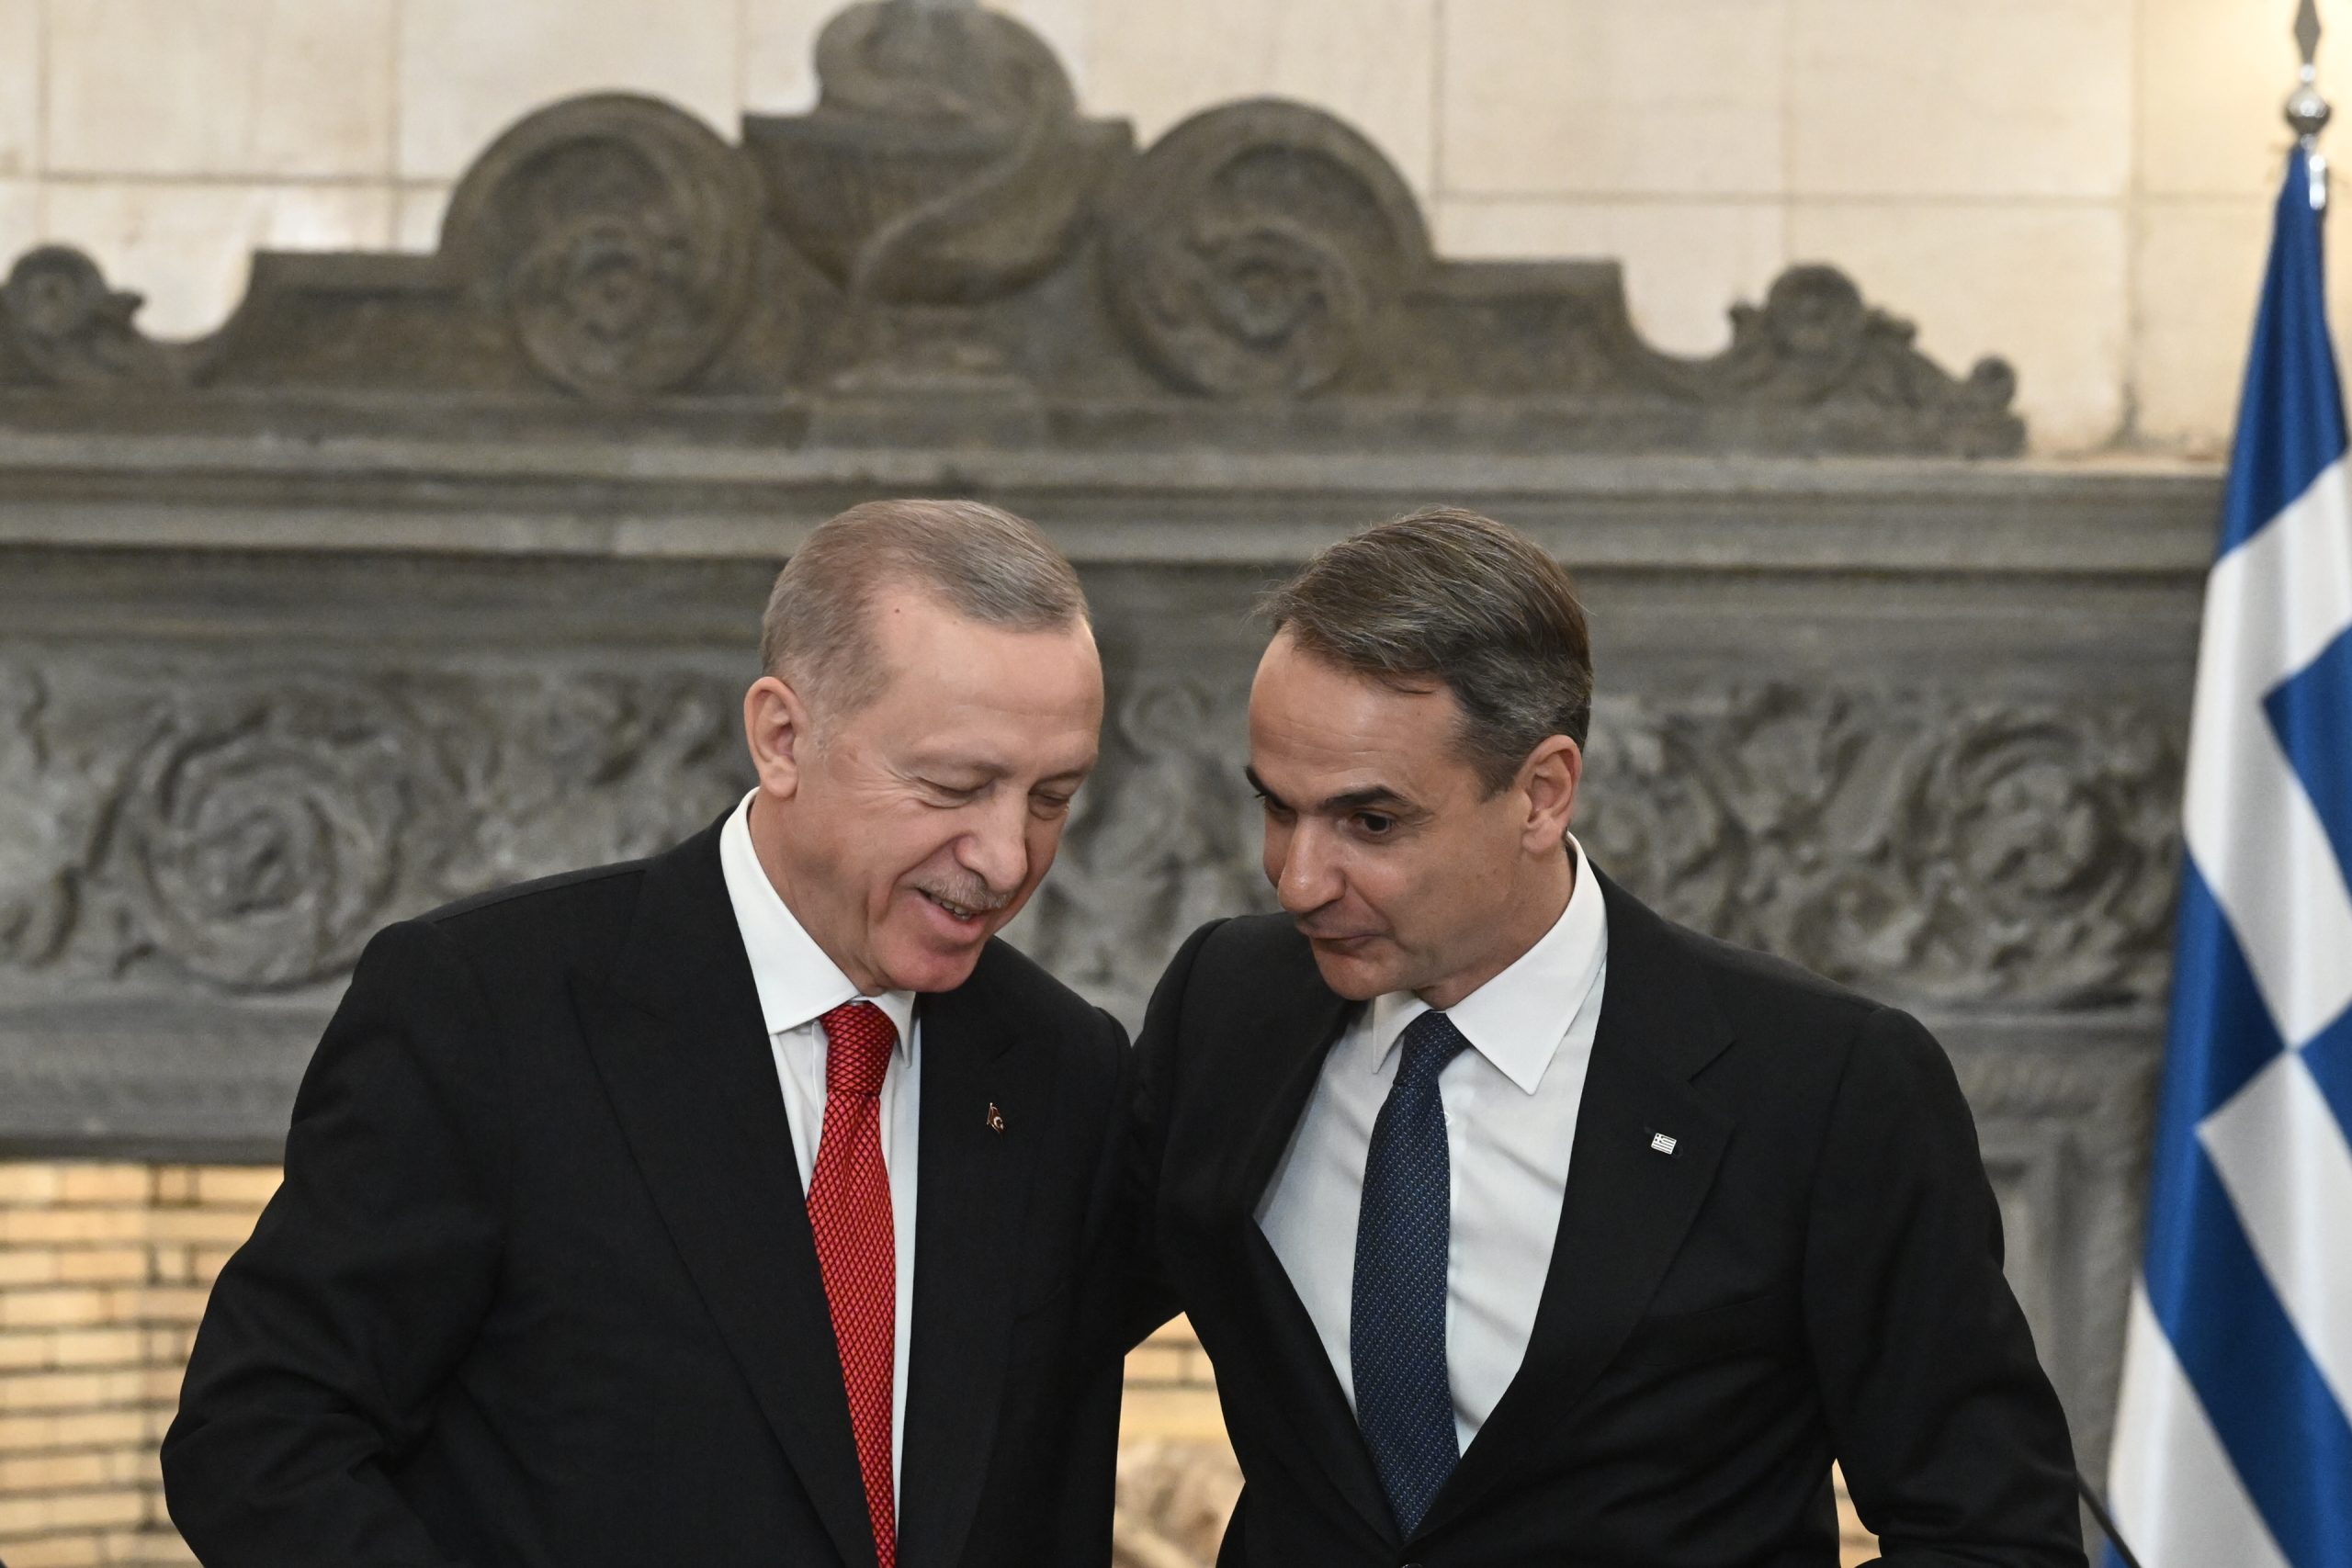  Τί ξέρουν στην Τουρκία για συνεργασία με την Ελλάδα στην Ανατολική Μεσόγειο, που εμείς αγνοούμε;